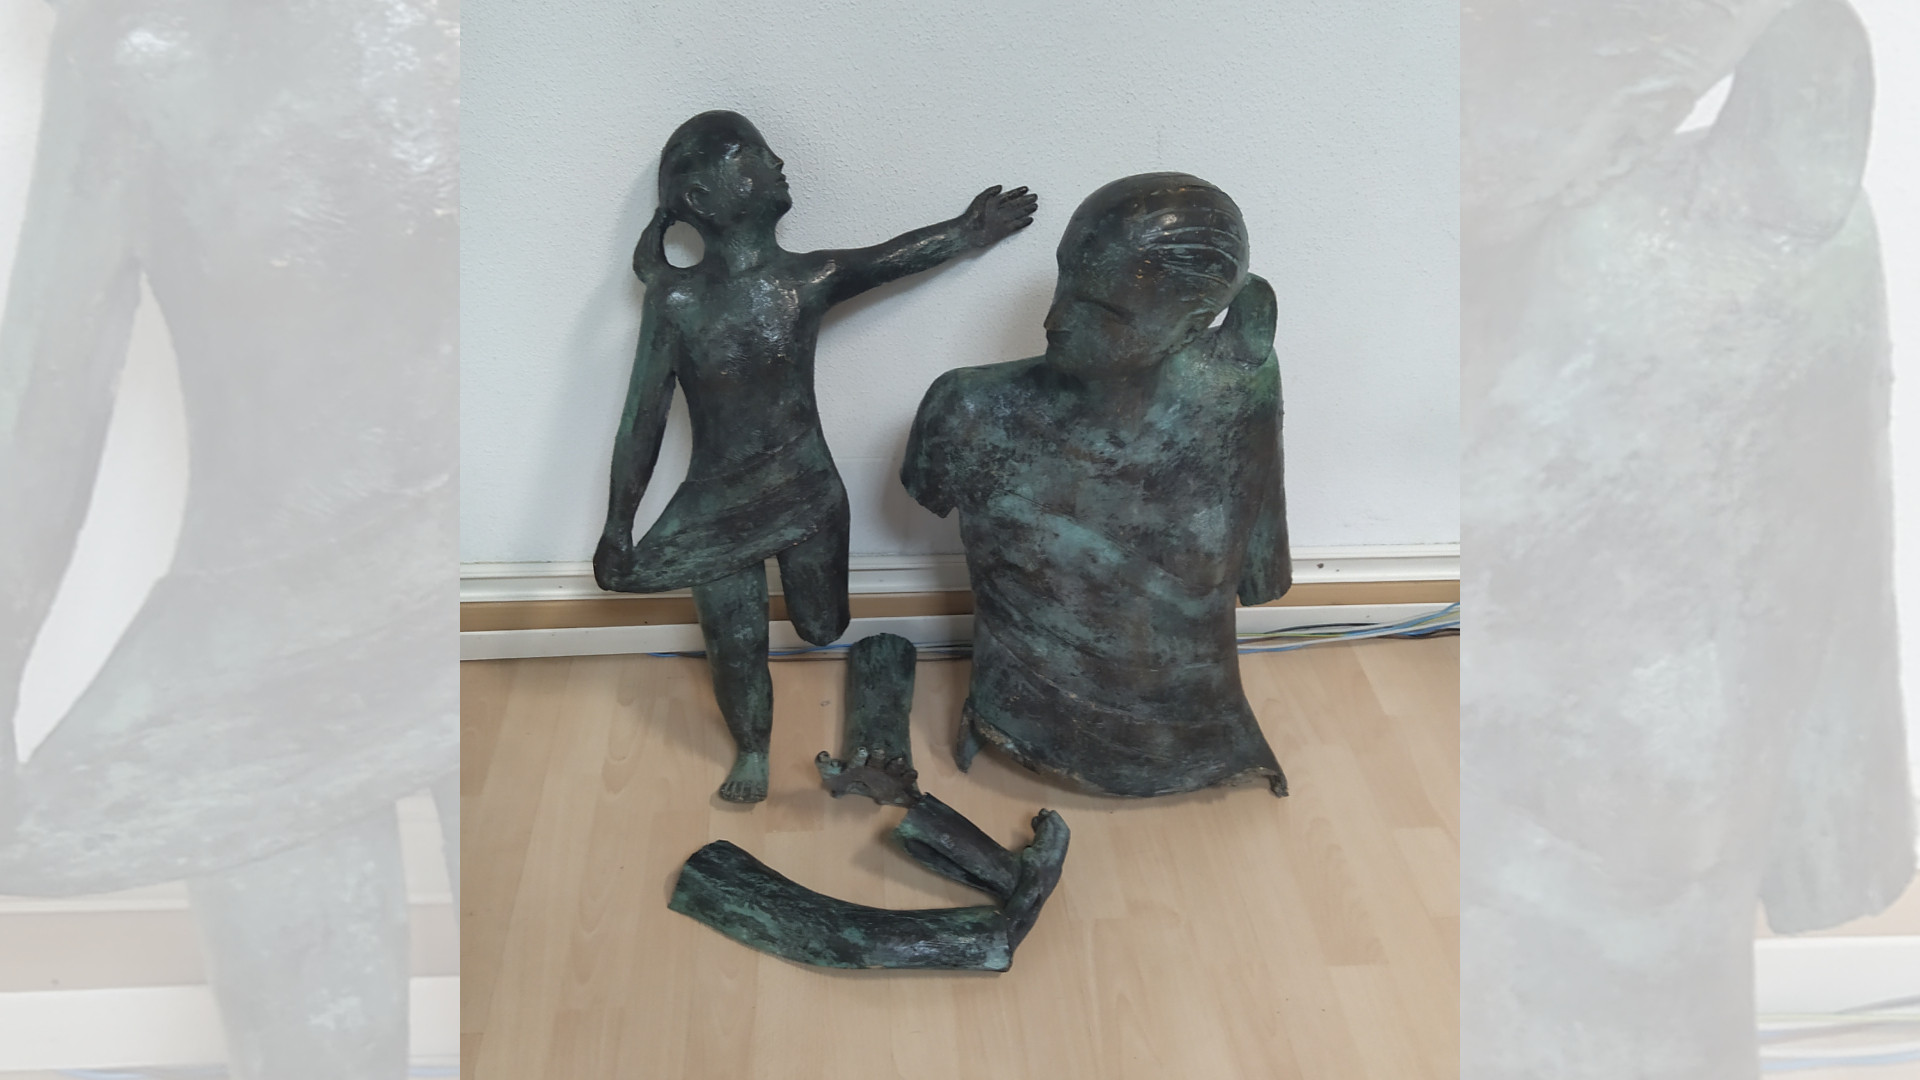 Restos de la escultura encontrado en el piso. Foto: Policía Local de Vigo